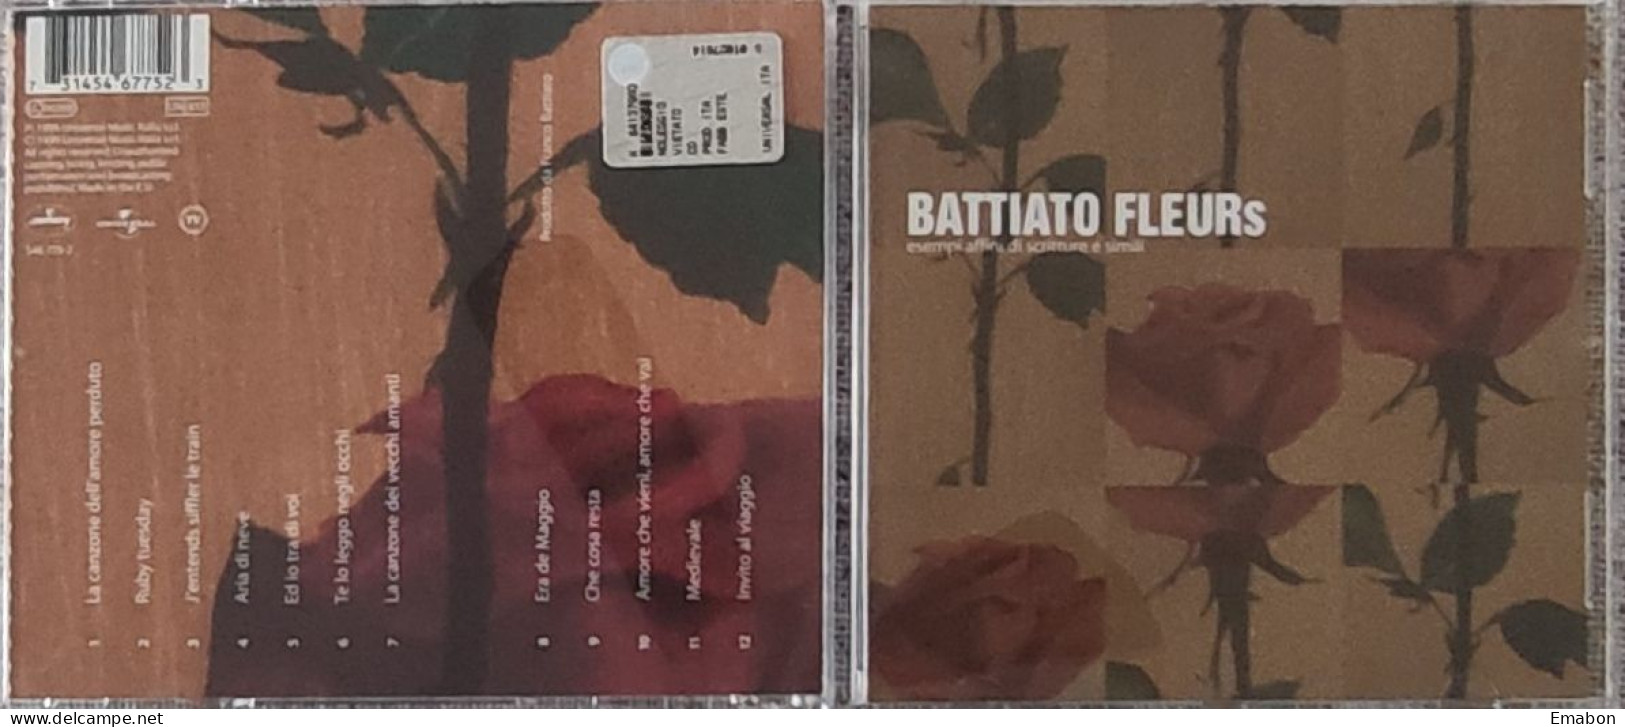 BORGATTA -  Cd  FRANCO BATTIATO   - FLEURS  - UNIVERSAL MUSIC  1999  -  USATO In Buono Stato - Otros - Canción Italiana